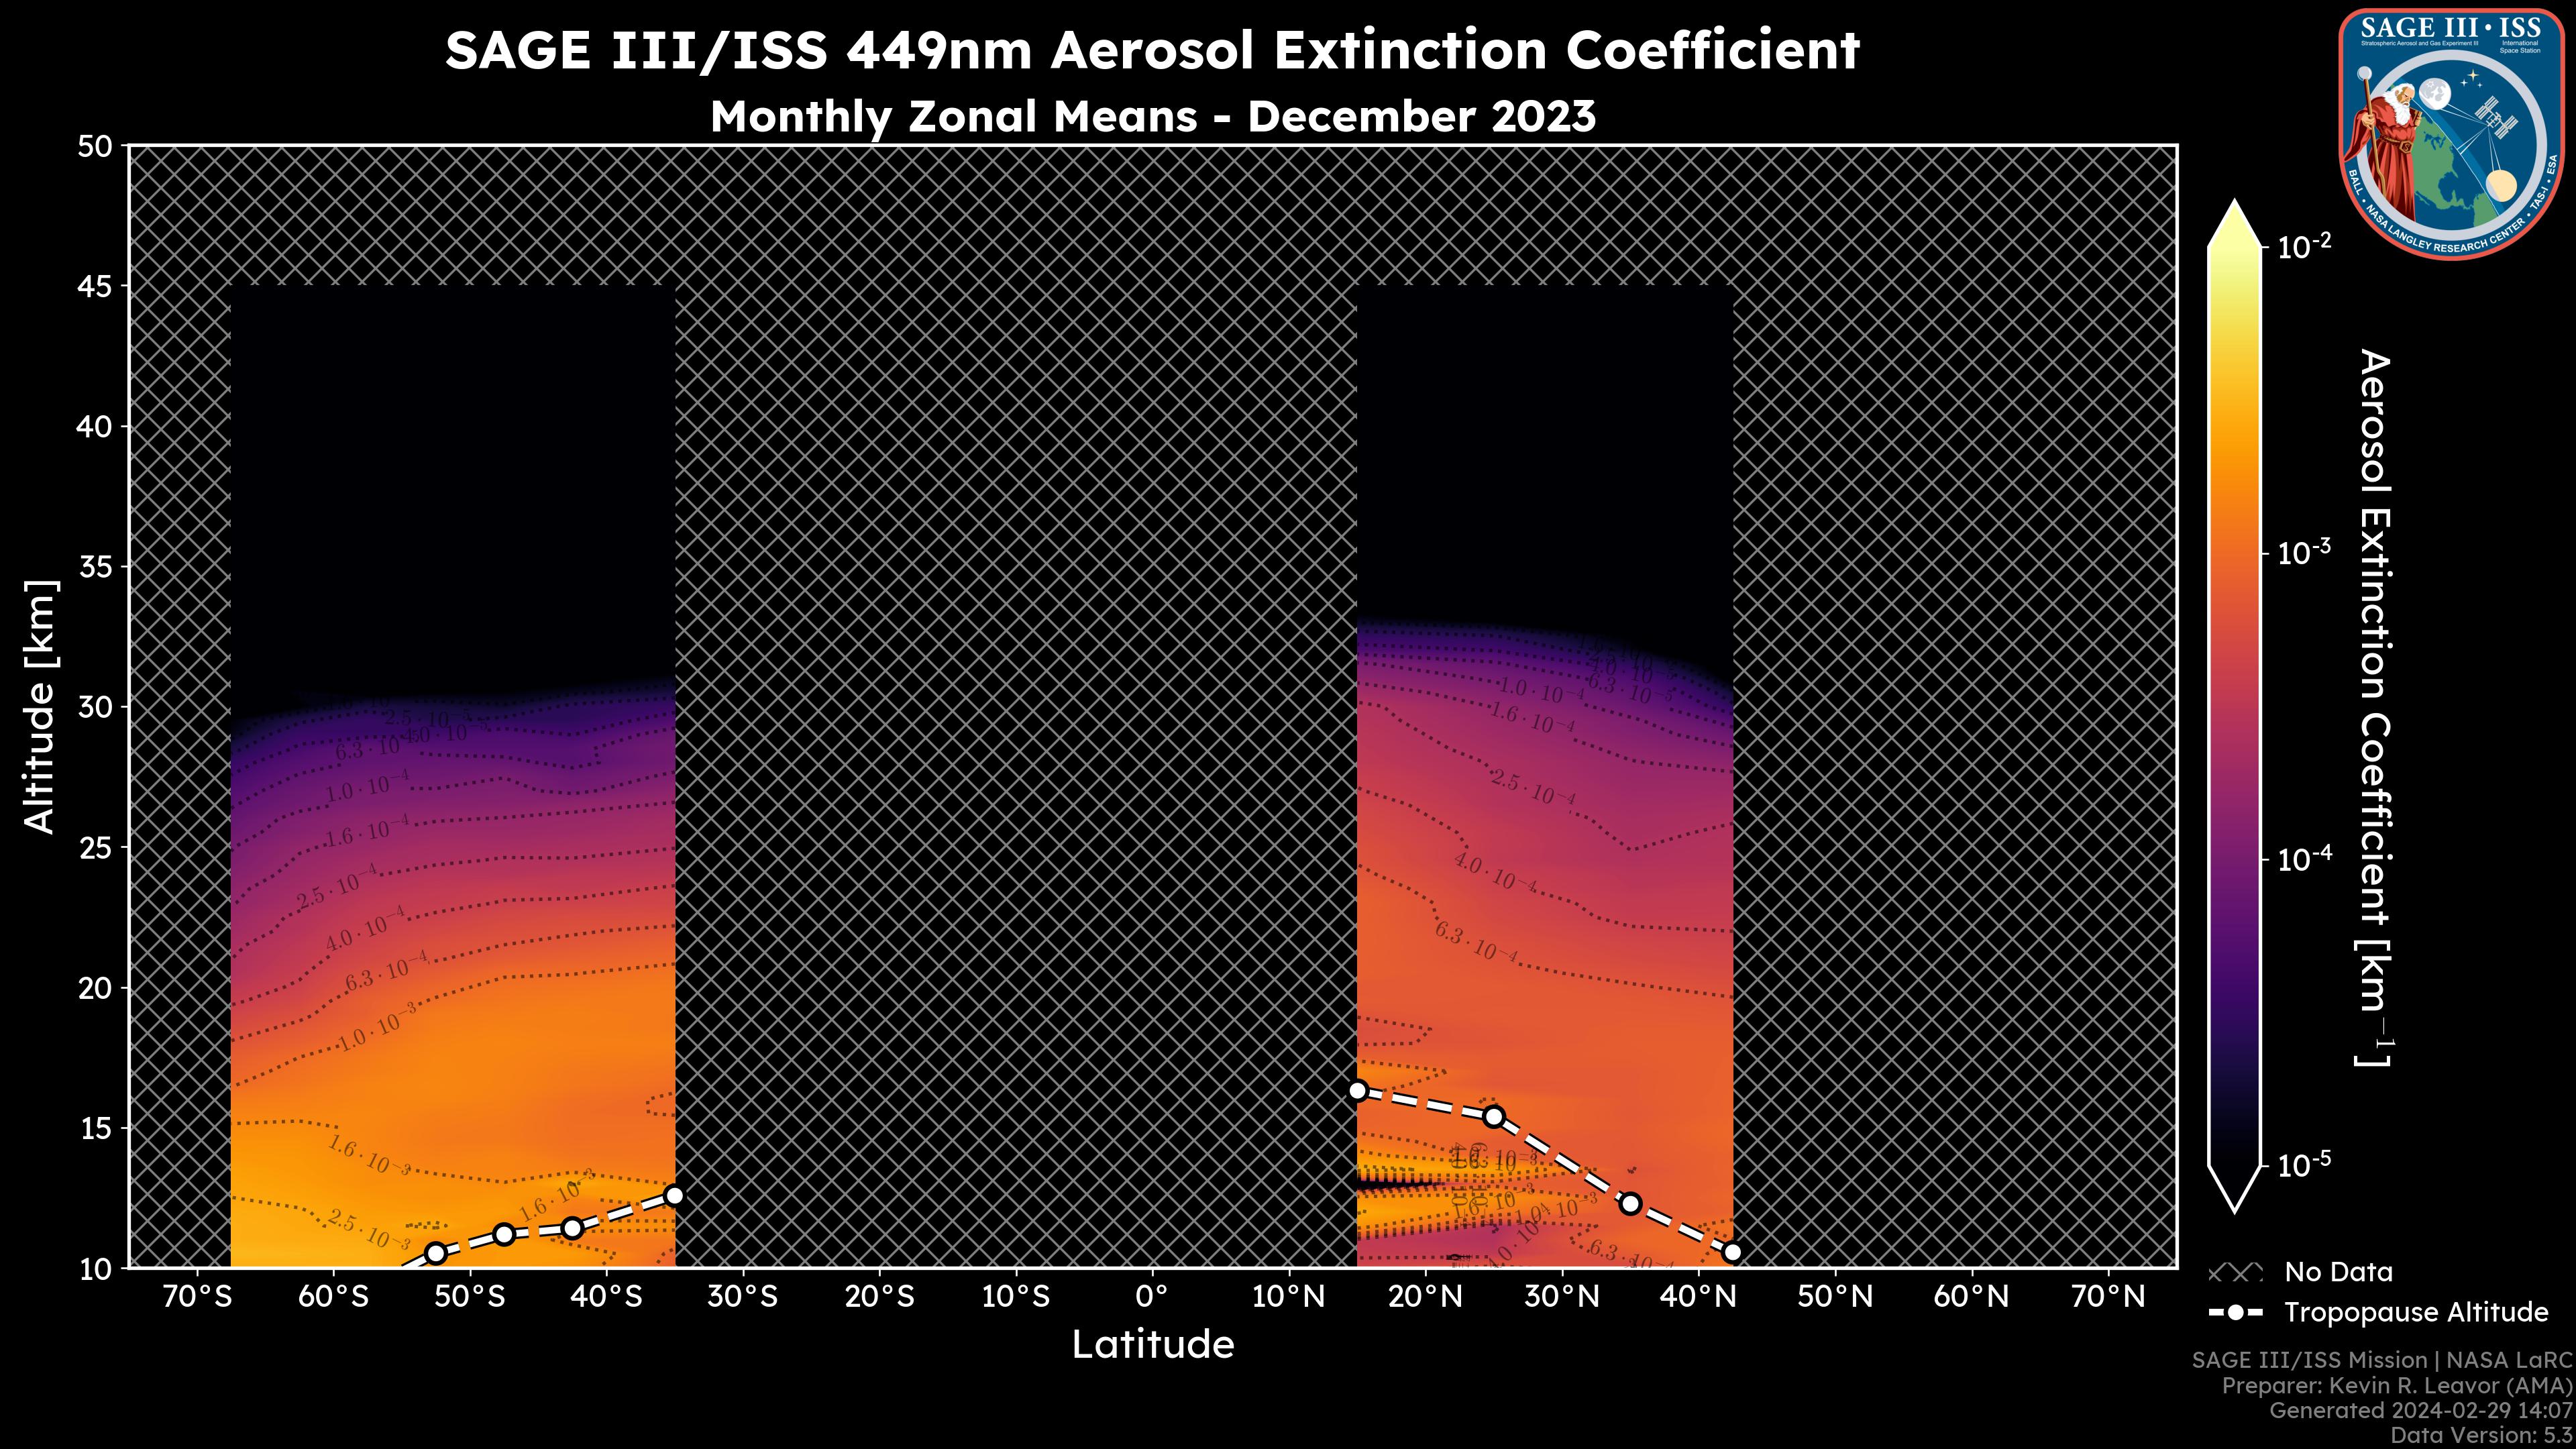 449nm Aerosol Extinction Coefficient